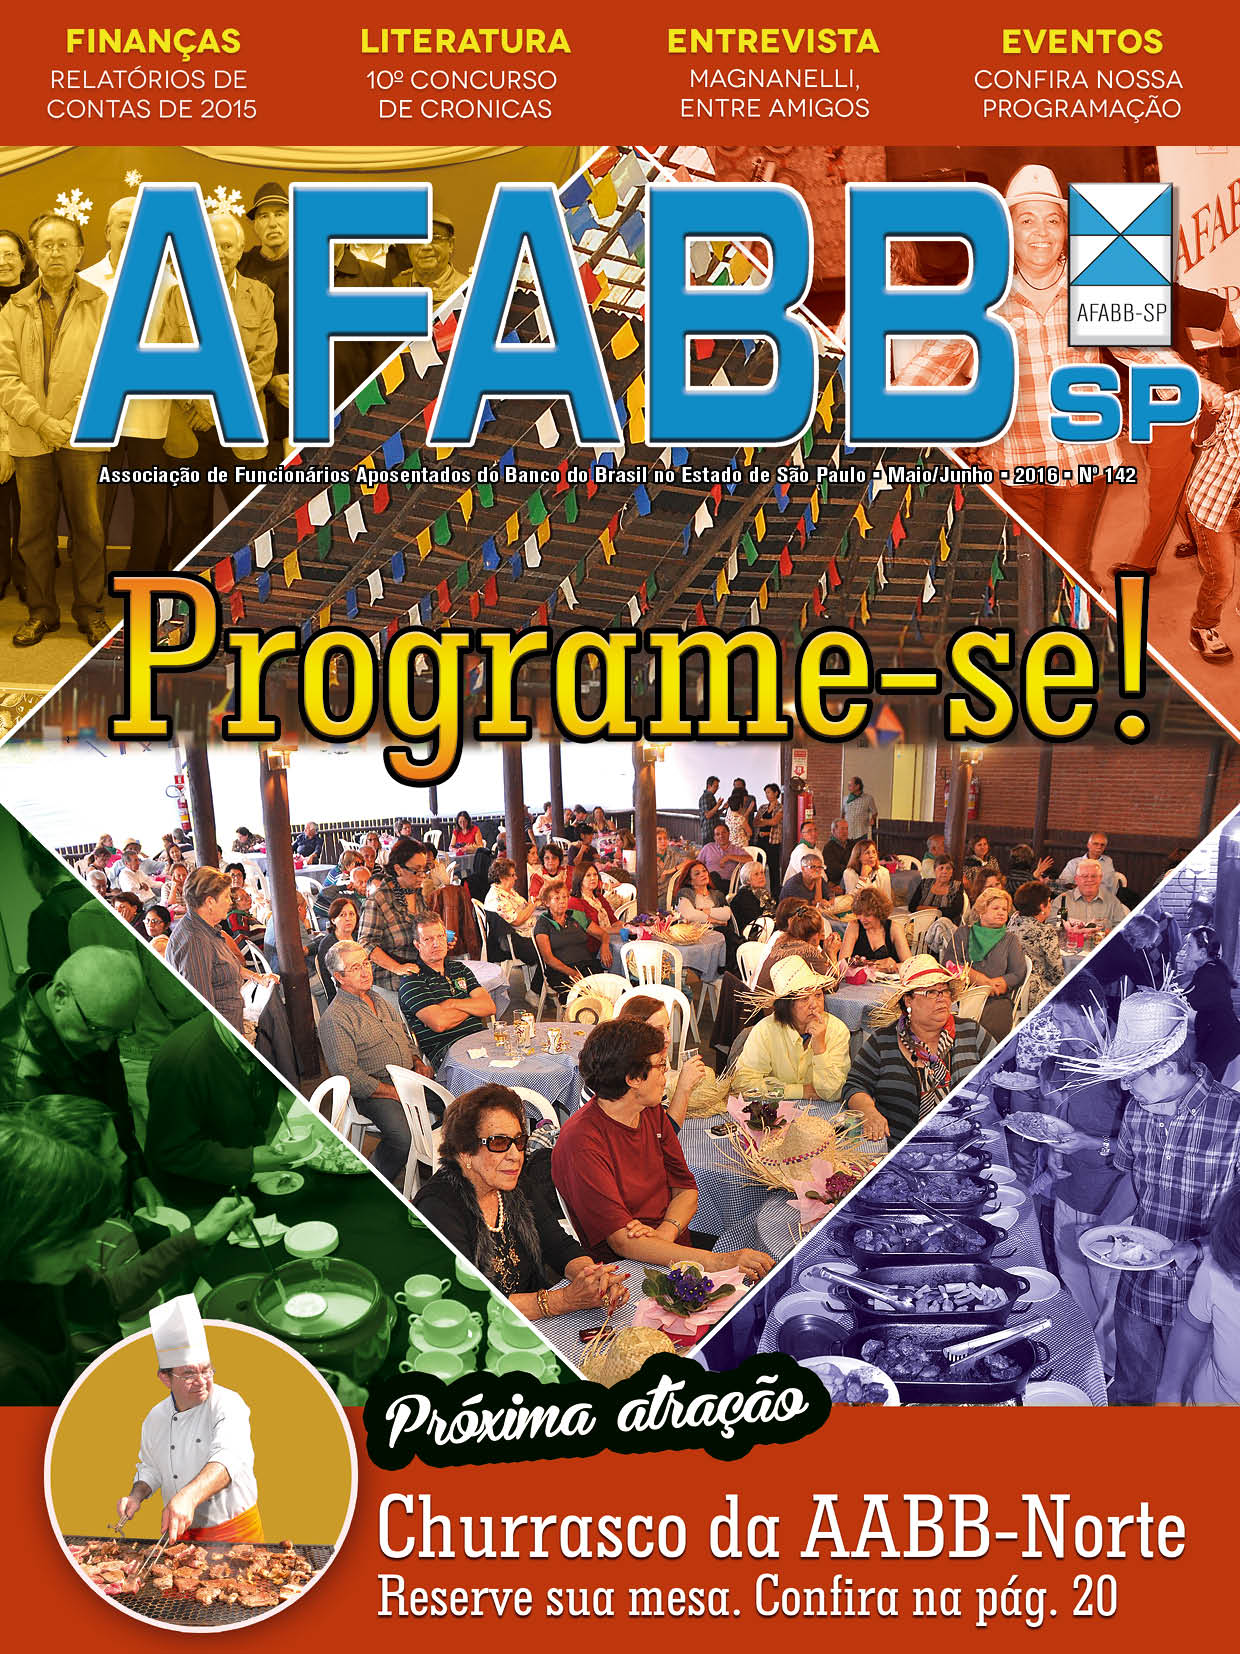 Revista AFABB-SP / Edição 142